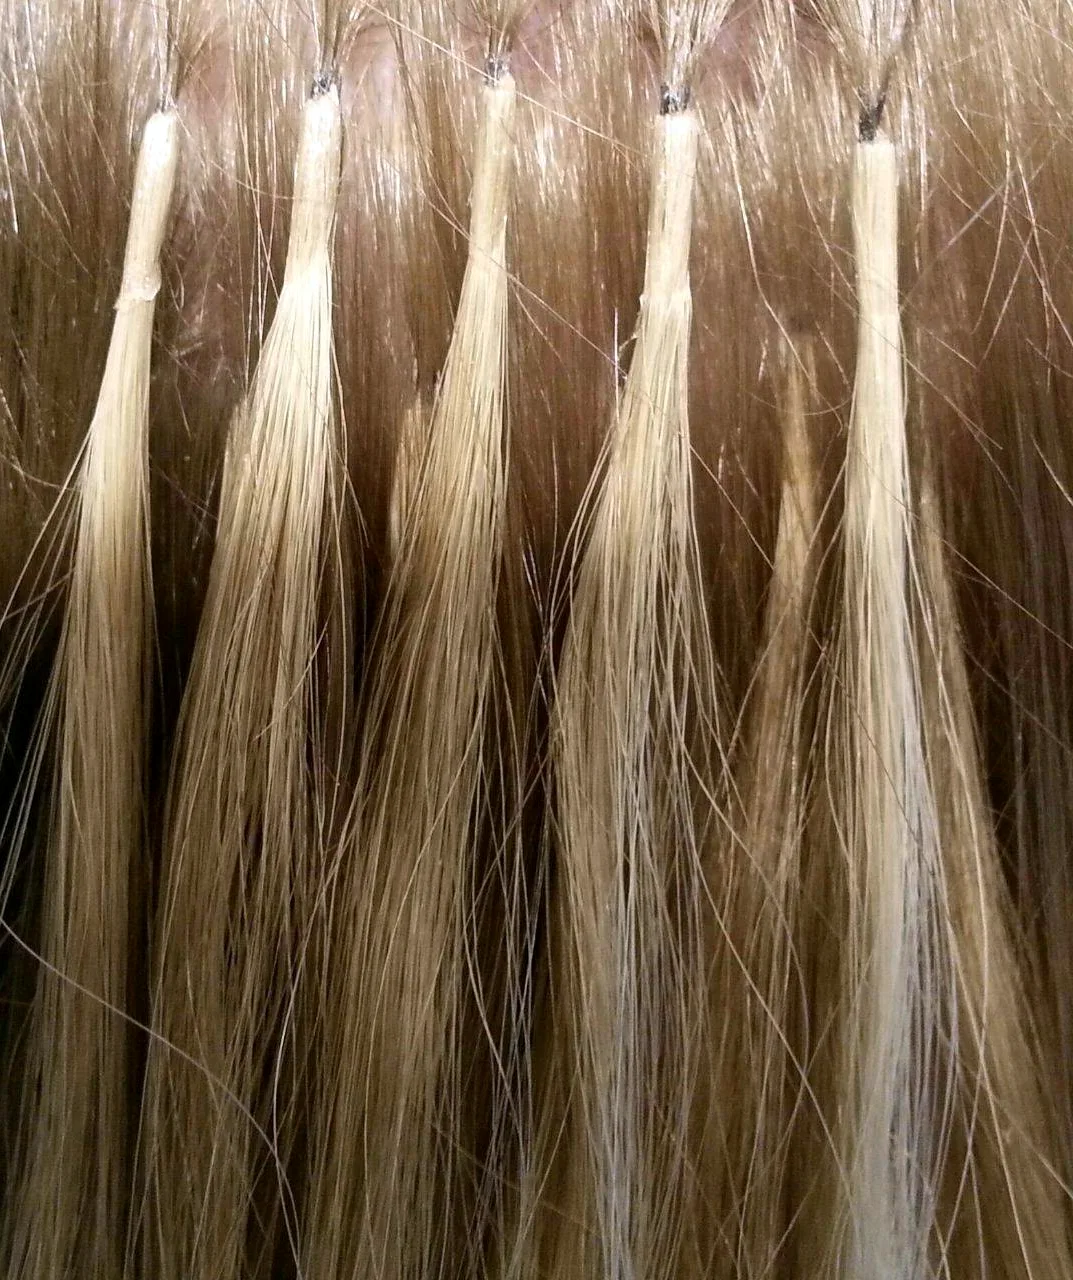 Итальянское микрокапсульное наращивание волос